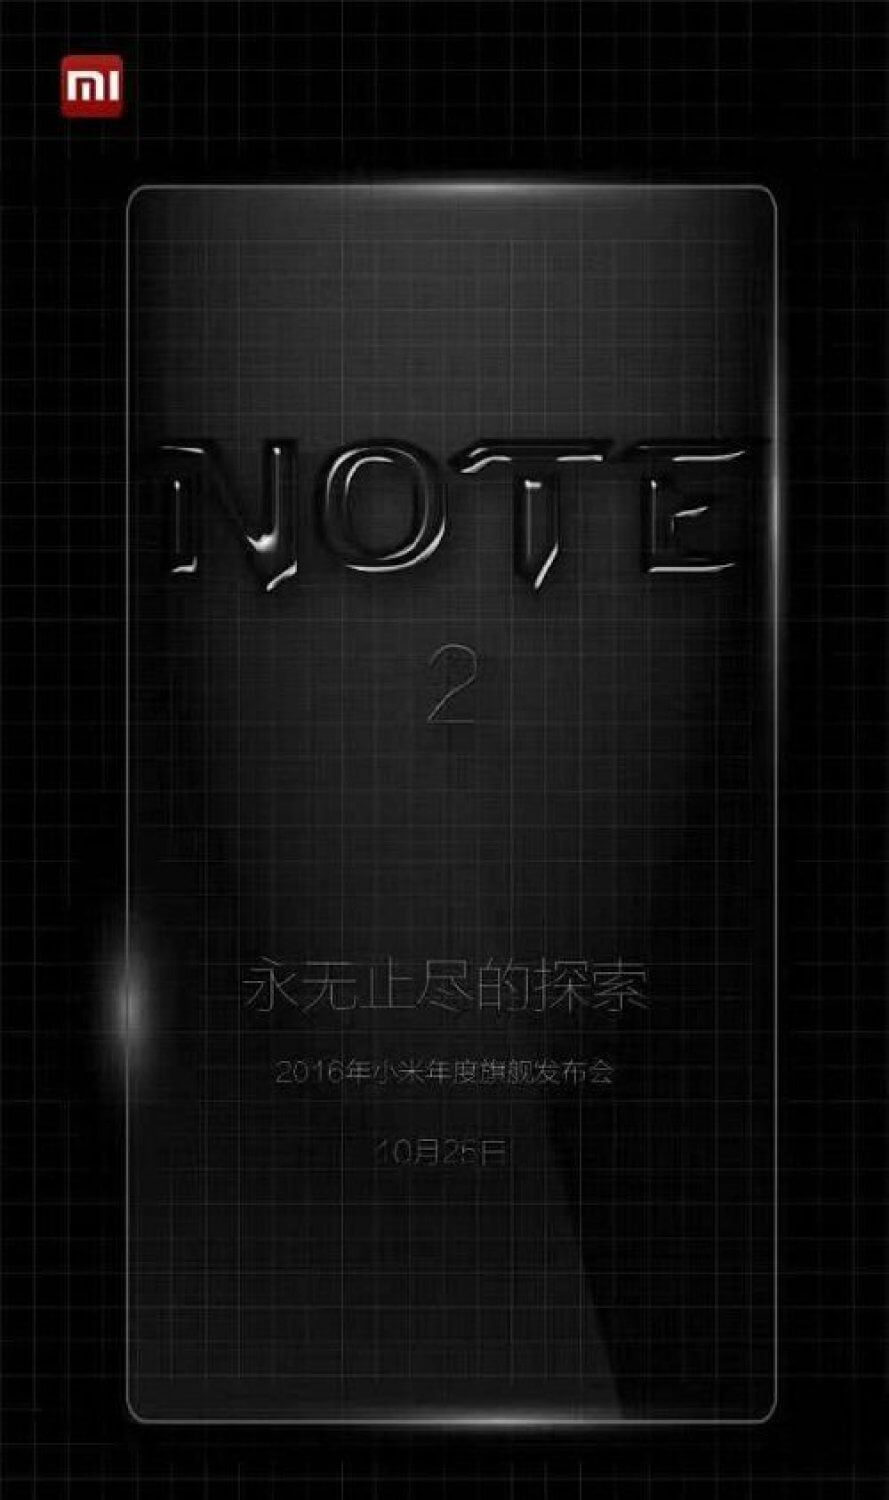 Предположительно тизер Xiaomi Mi Note 2, дающий представление о внешнем виде телефона